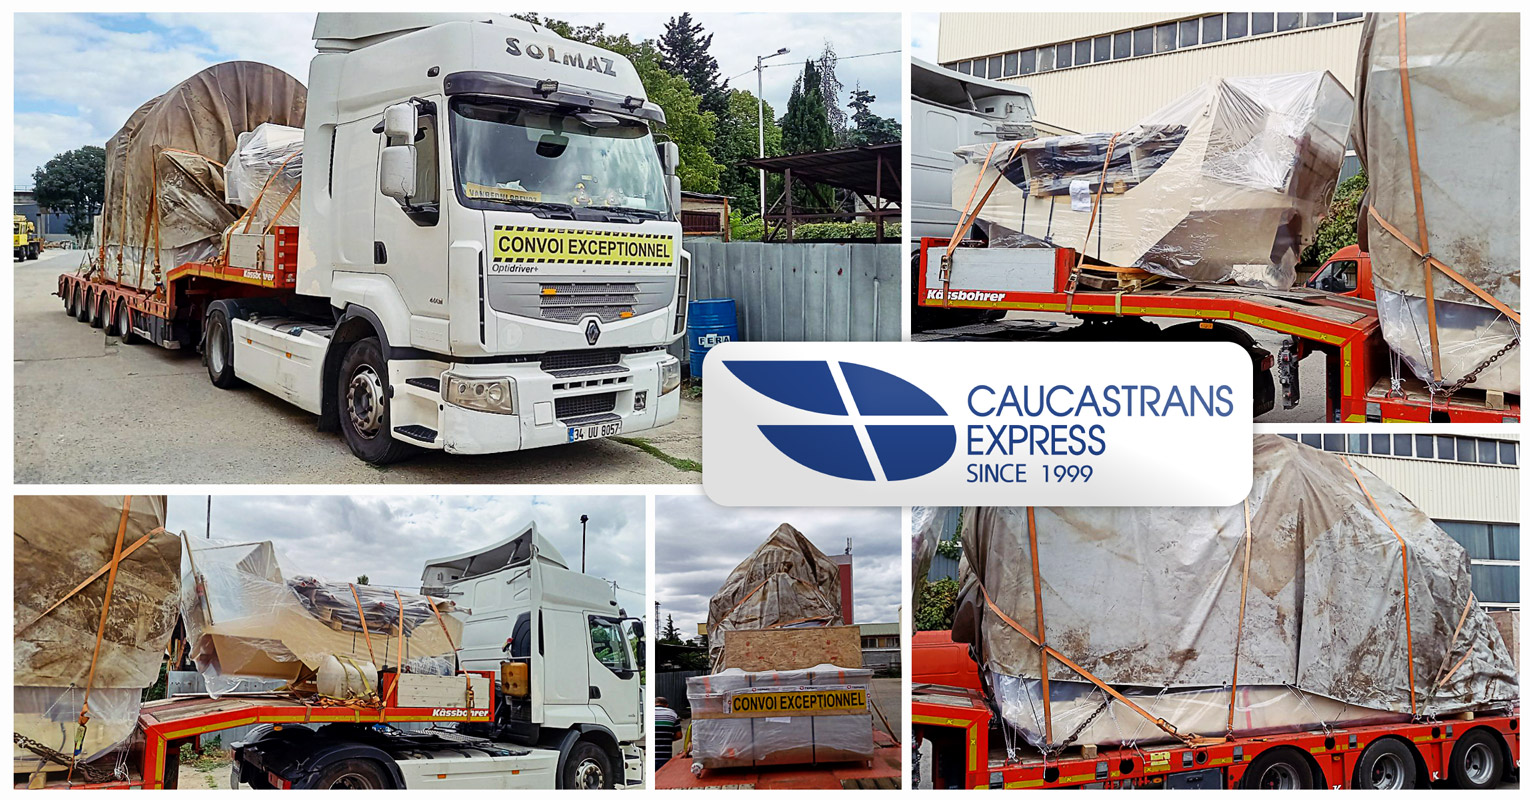 Caucastransexpress Delivered Oversized Cargo from Bulgaria to Uzbekistan via Turkey, Georgia, Azerbaijan and Turkmenistan